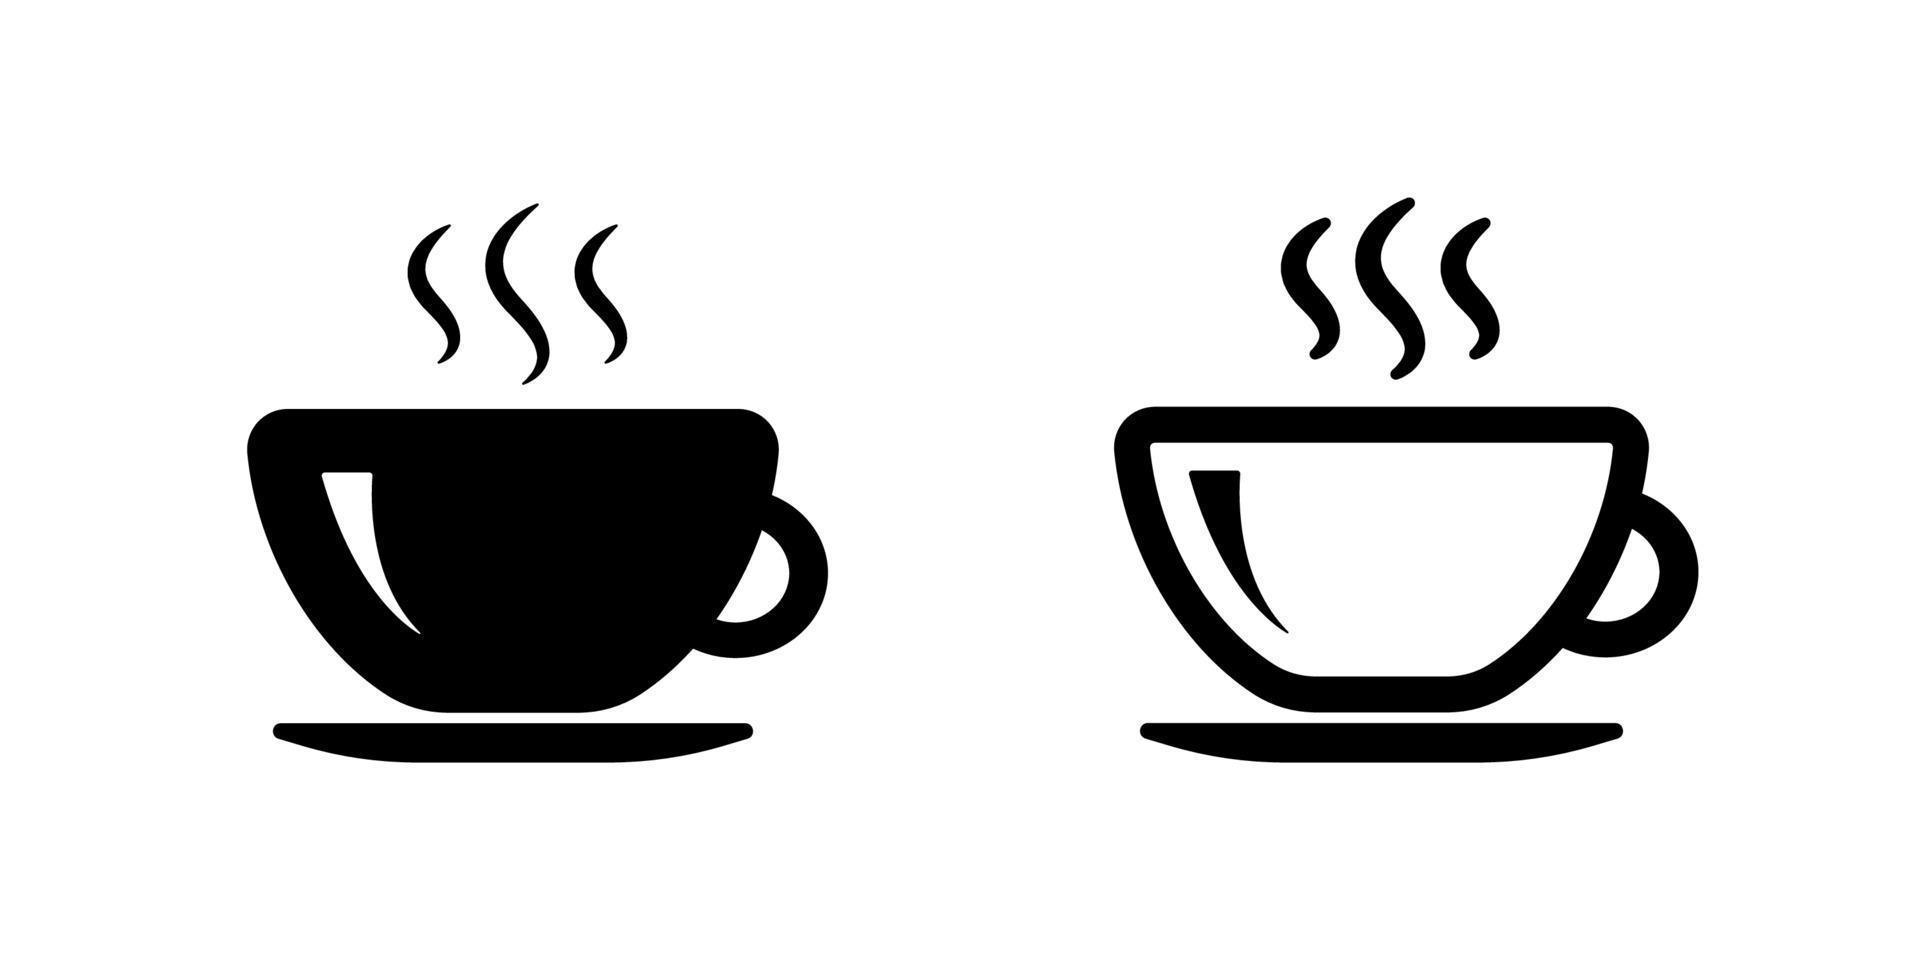 Coffee cup icon set. Hot tea mug symbol. Black line icon vector